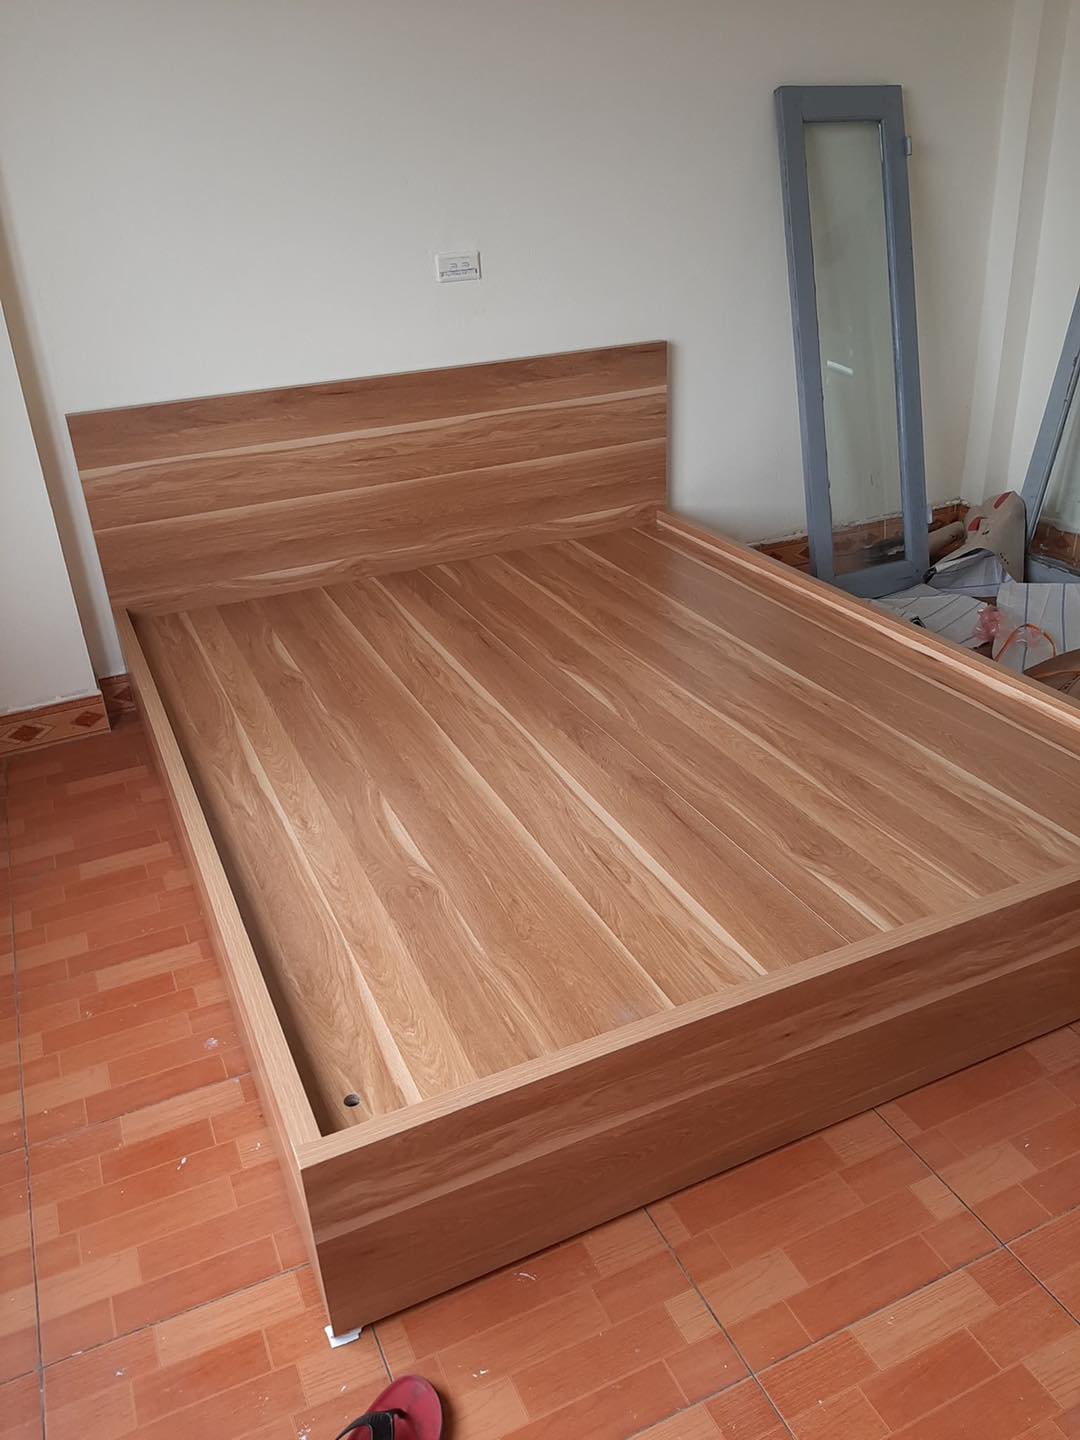 giường ngủ gỗ công nghiệp giá rẻ